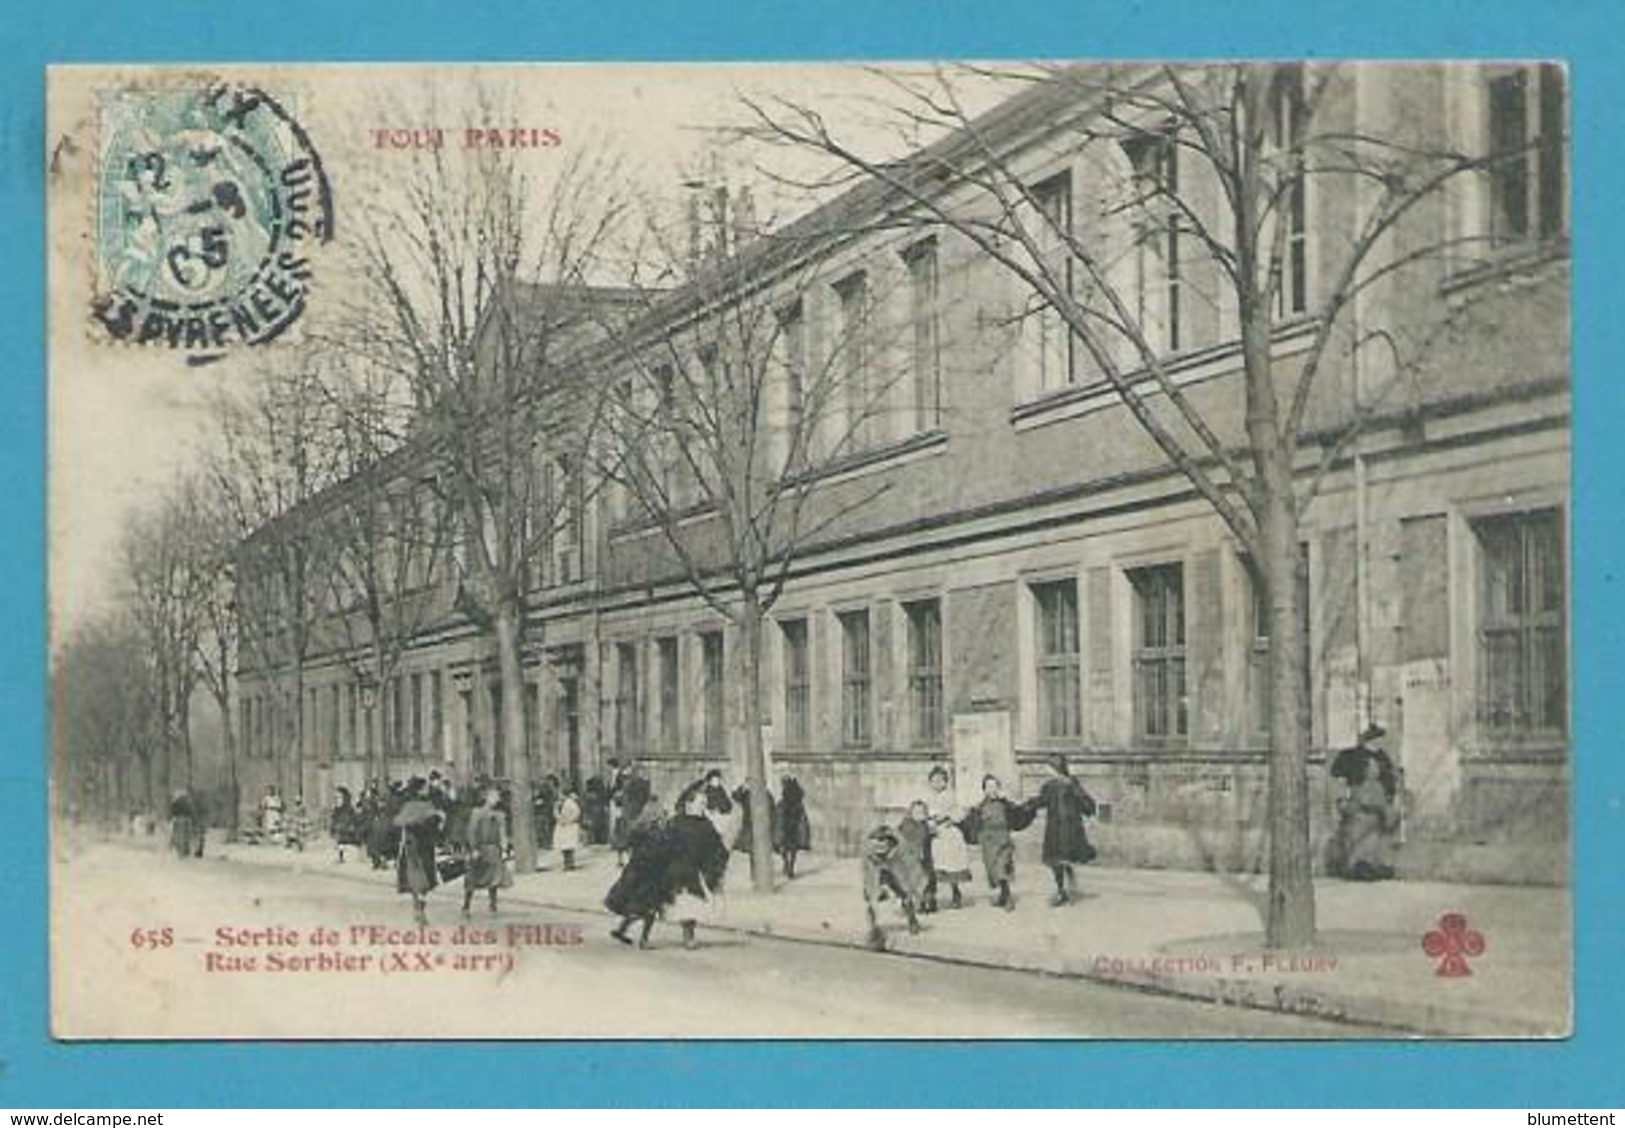 CPA 658 TOUT PARIS - Sortie De L'Ecole Des Filles Rue Sorbier (XXème) - Editeur FLEURY - Arrondissement: 20